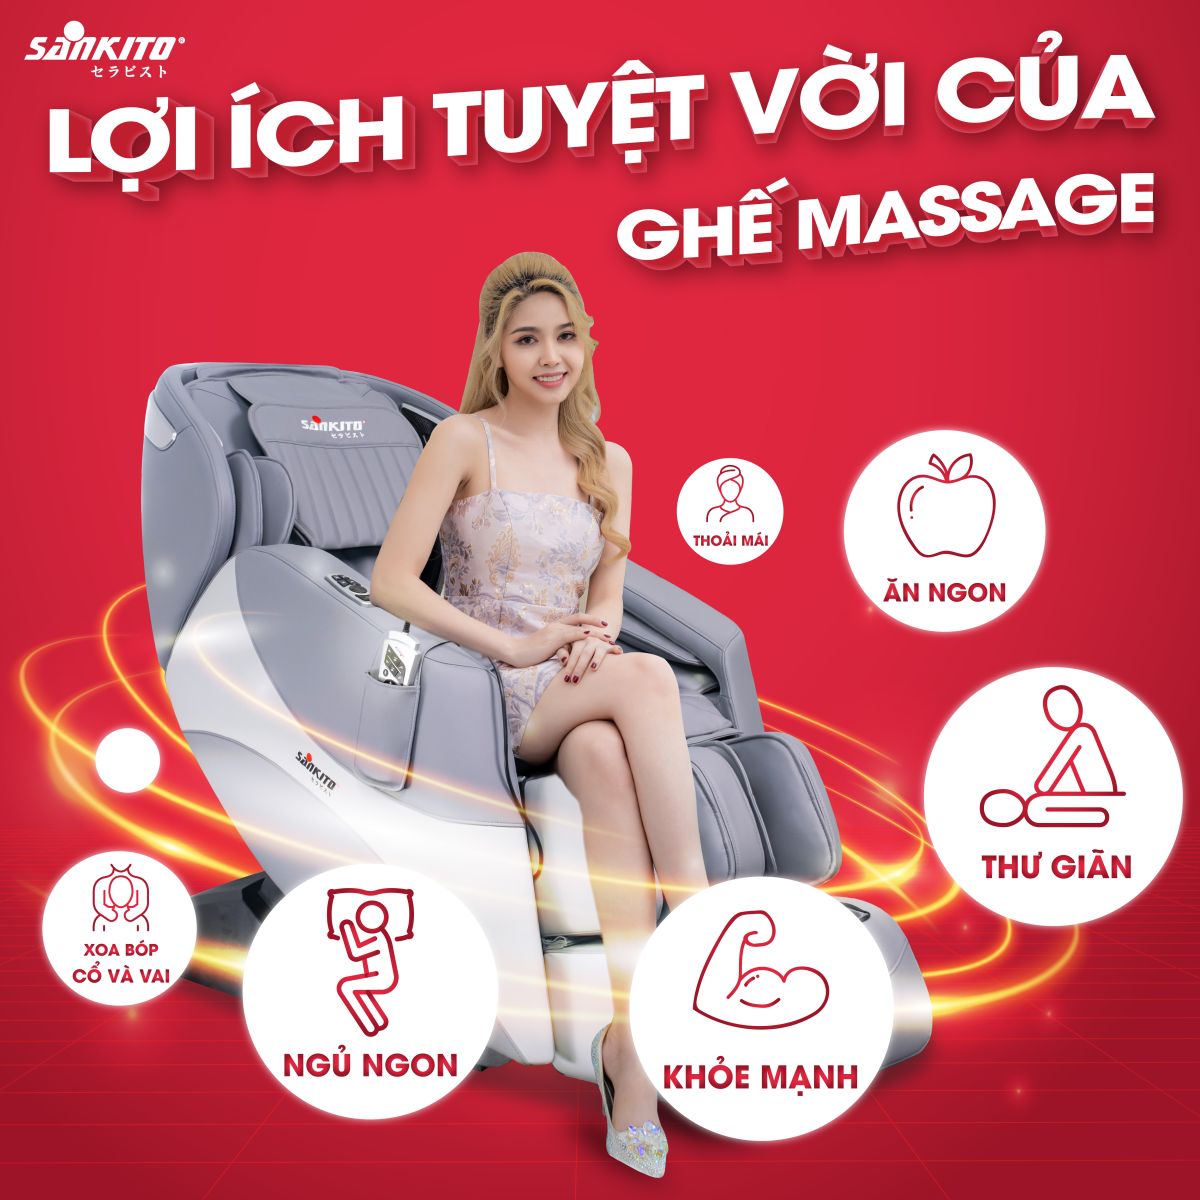 Lợi ích ghế massage toàn thân mang lại cho người lớn tuổi